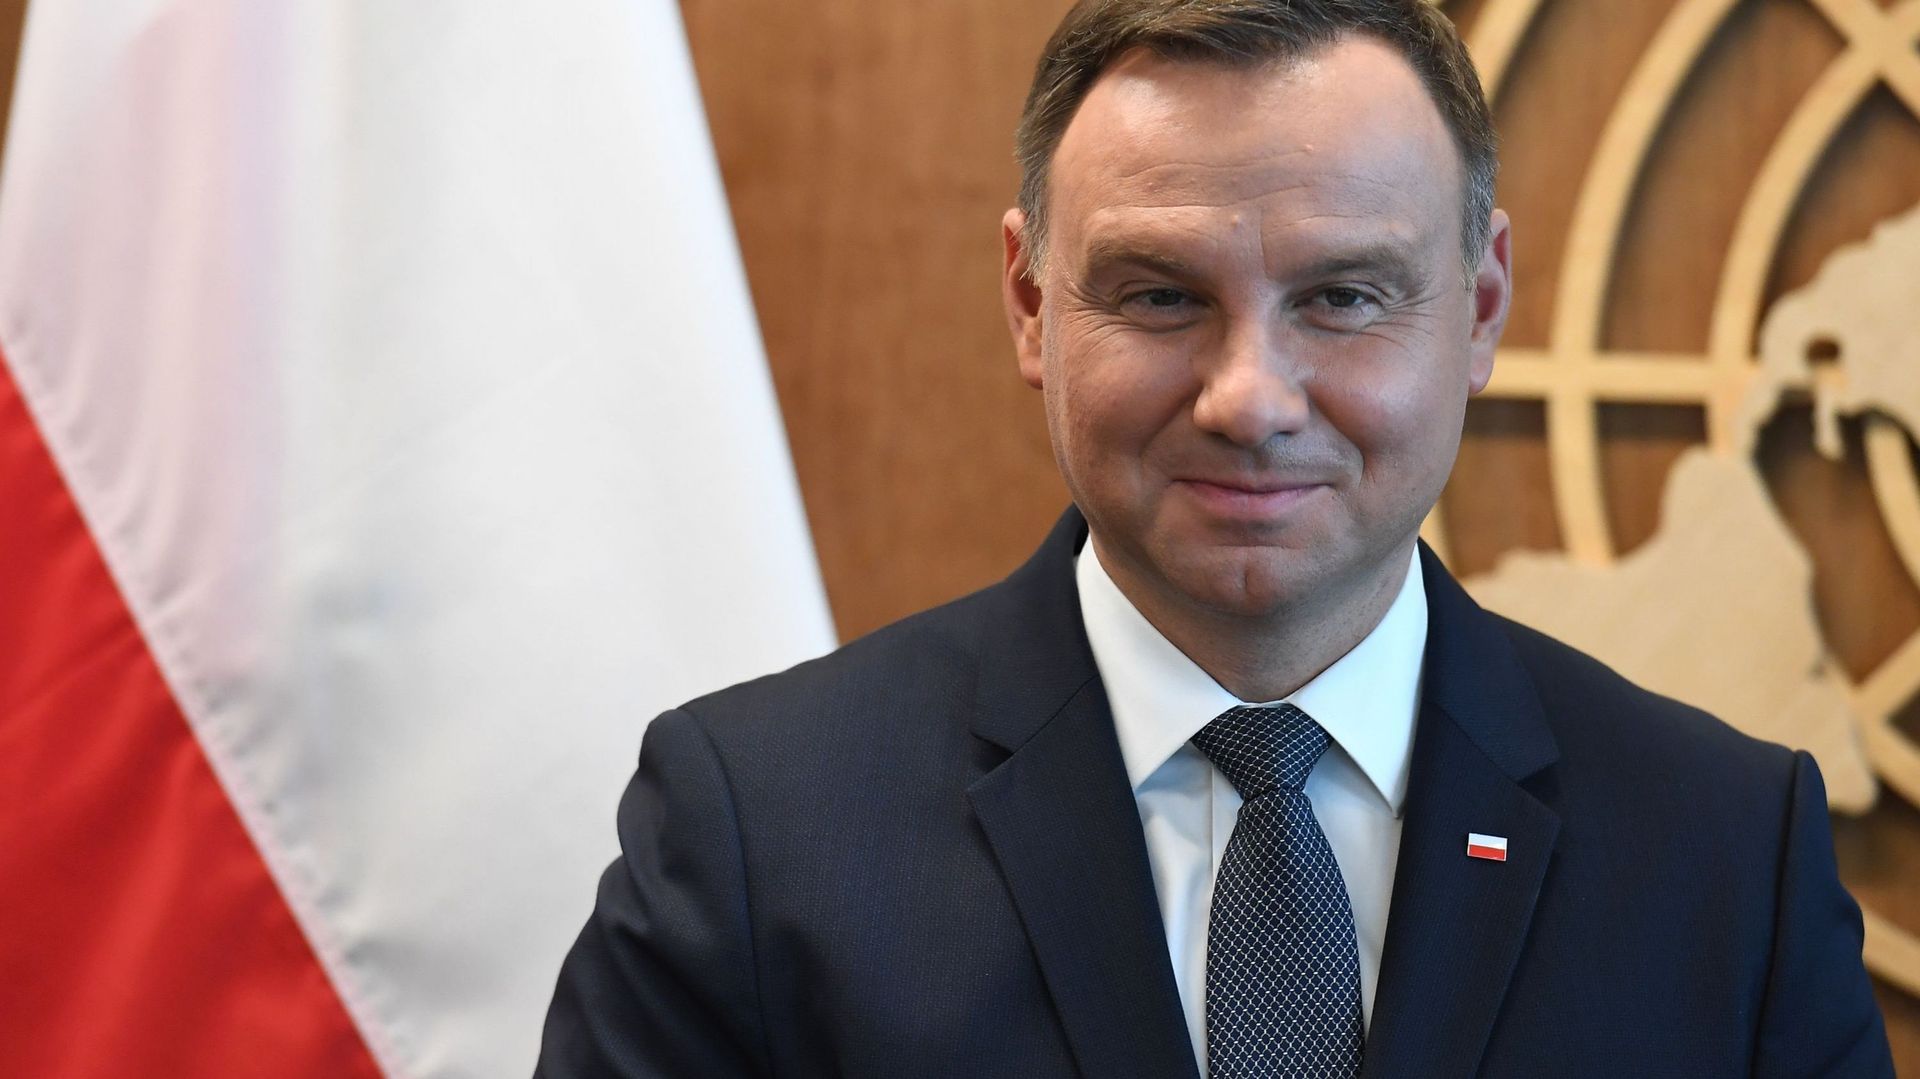 Réforme judiciaire en Pologne: le président renonce finalement à modifier la Constitution